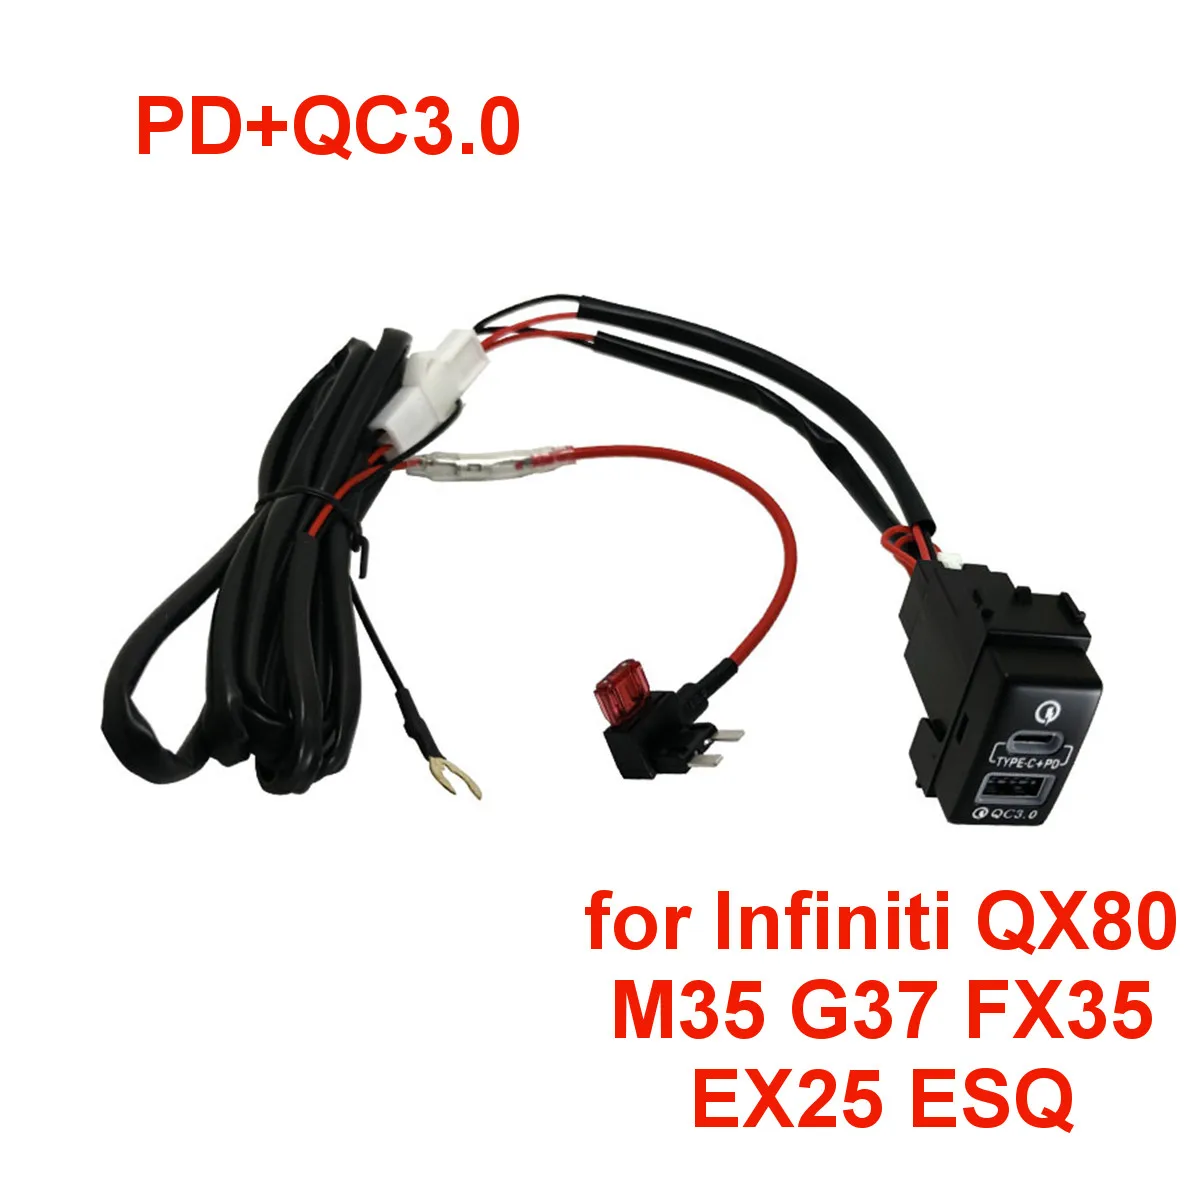 

Автомобильное зарядное устройство для Infiniti QX80, M35, G37, FX35, EX25, ESQ, PD, QC3.0, разъем USB Type-C, быстрая зарядка